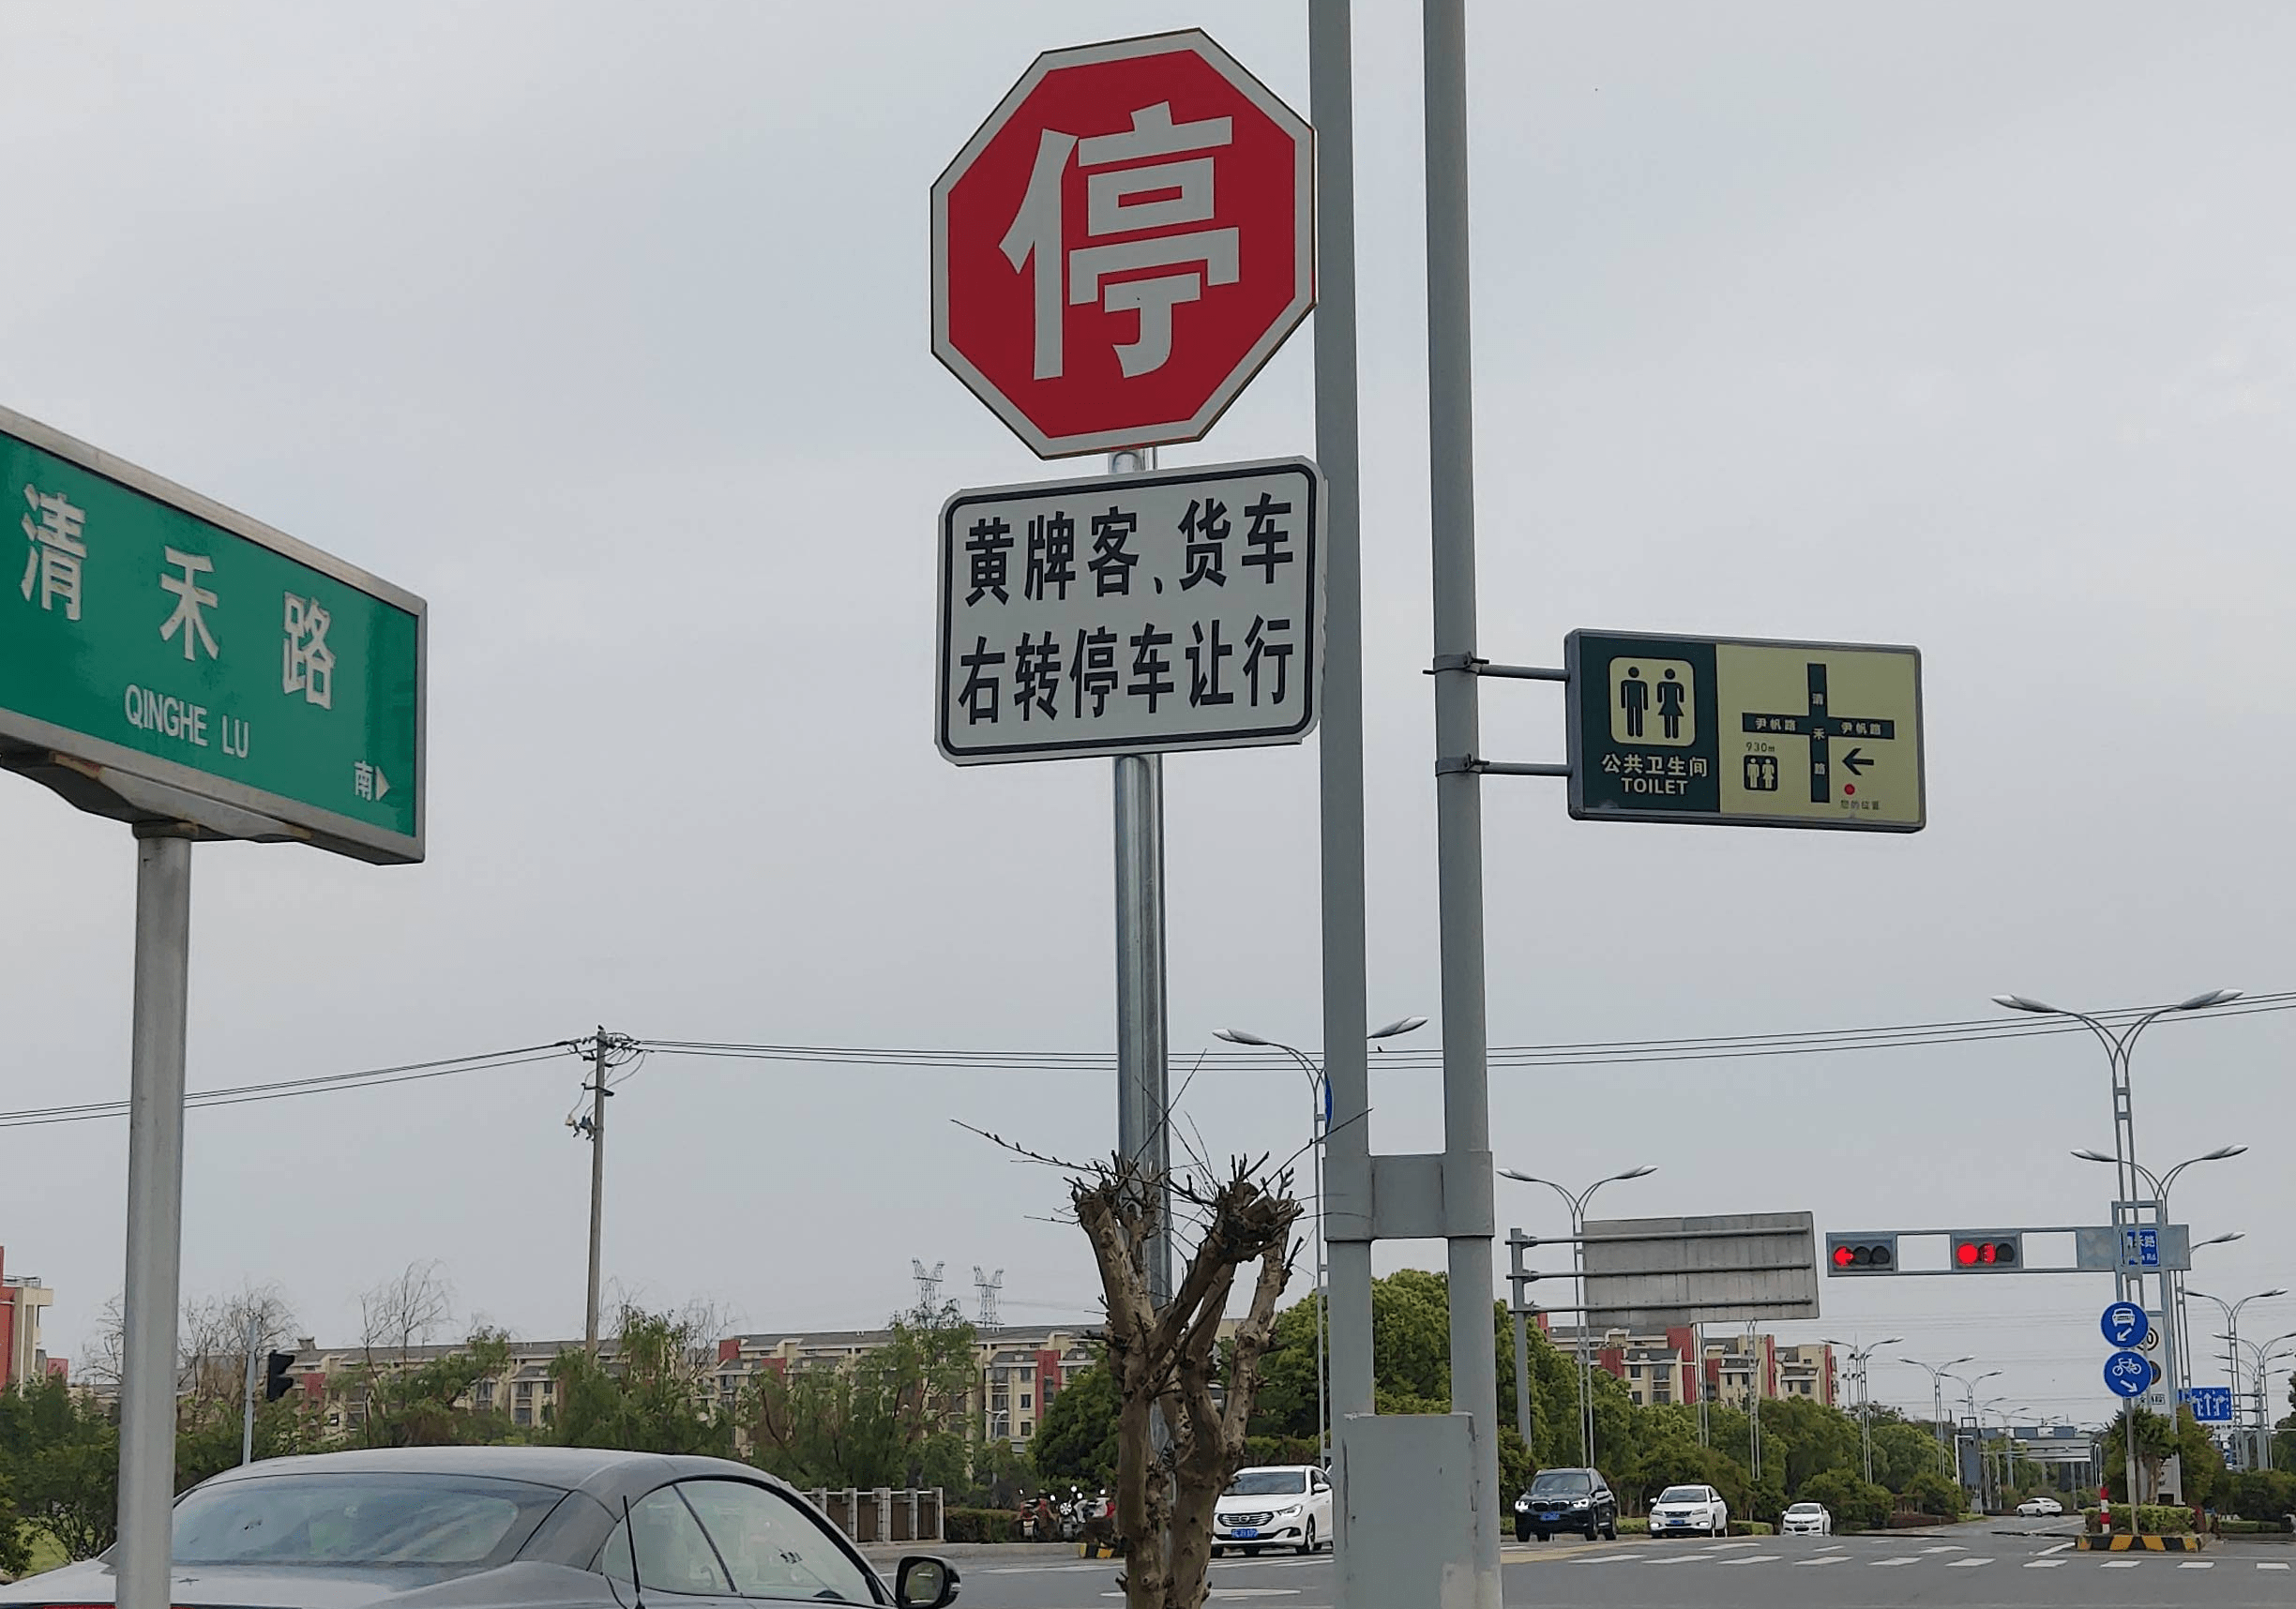 清禾路尹帆路路口竖立右转必停标志牌